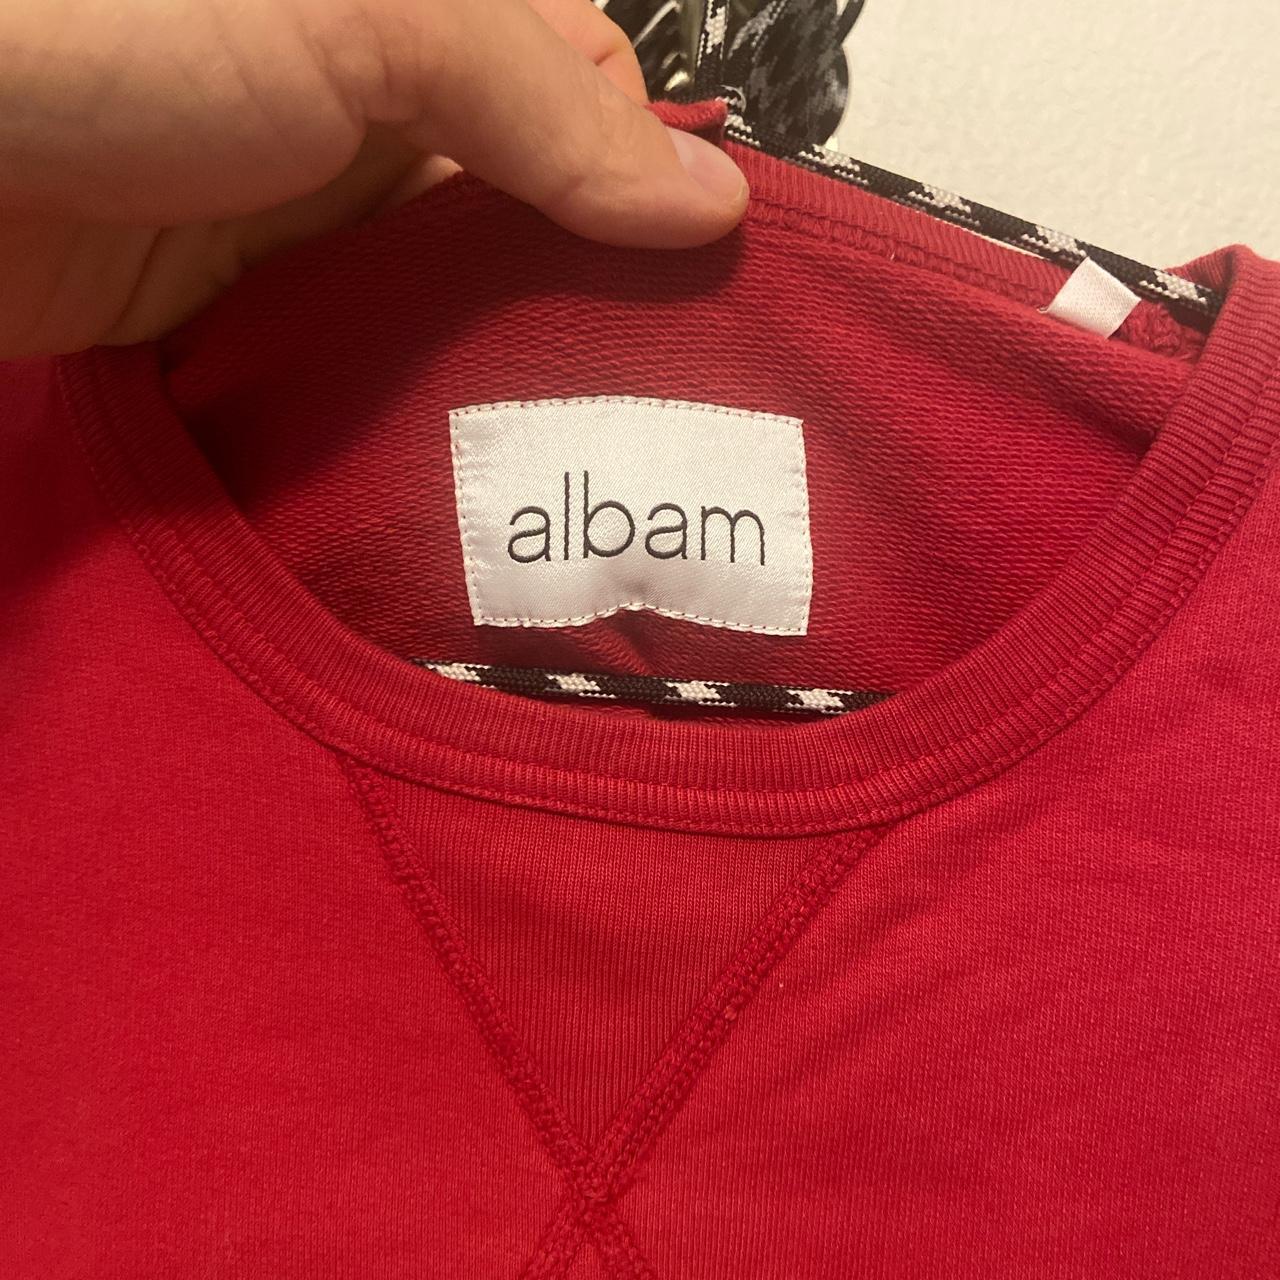 Product Image 2 - #albam sweatshirt - red -